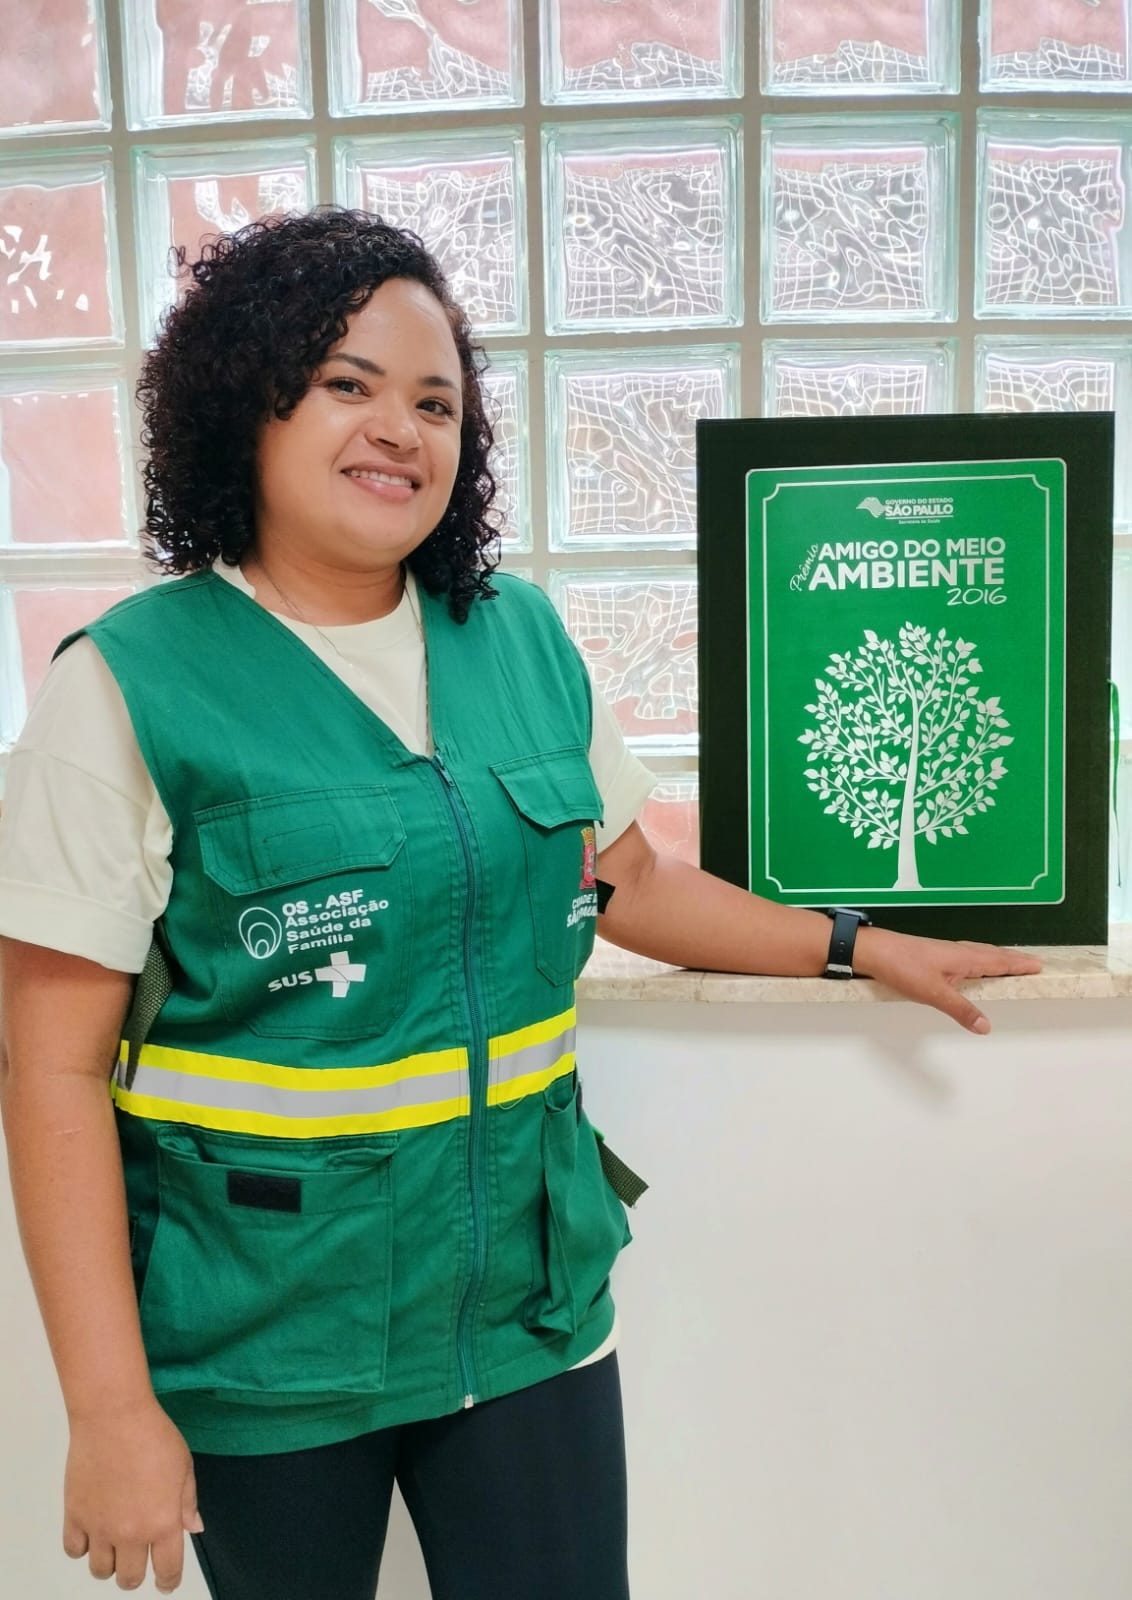 A foto mostra Jane, uma mulher branca, de cabelos pretos e enrolados, usando um colete verde. Ela está ao lado de uma placa do Prêmio Amigo de Meio Ambiente 2016. 